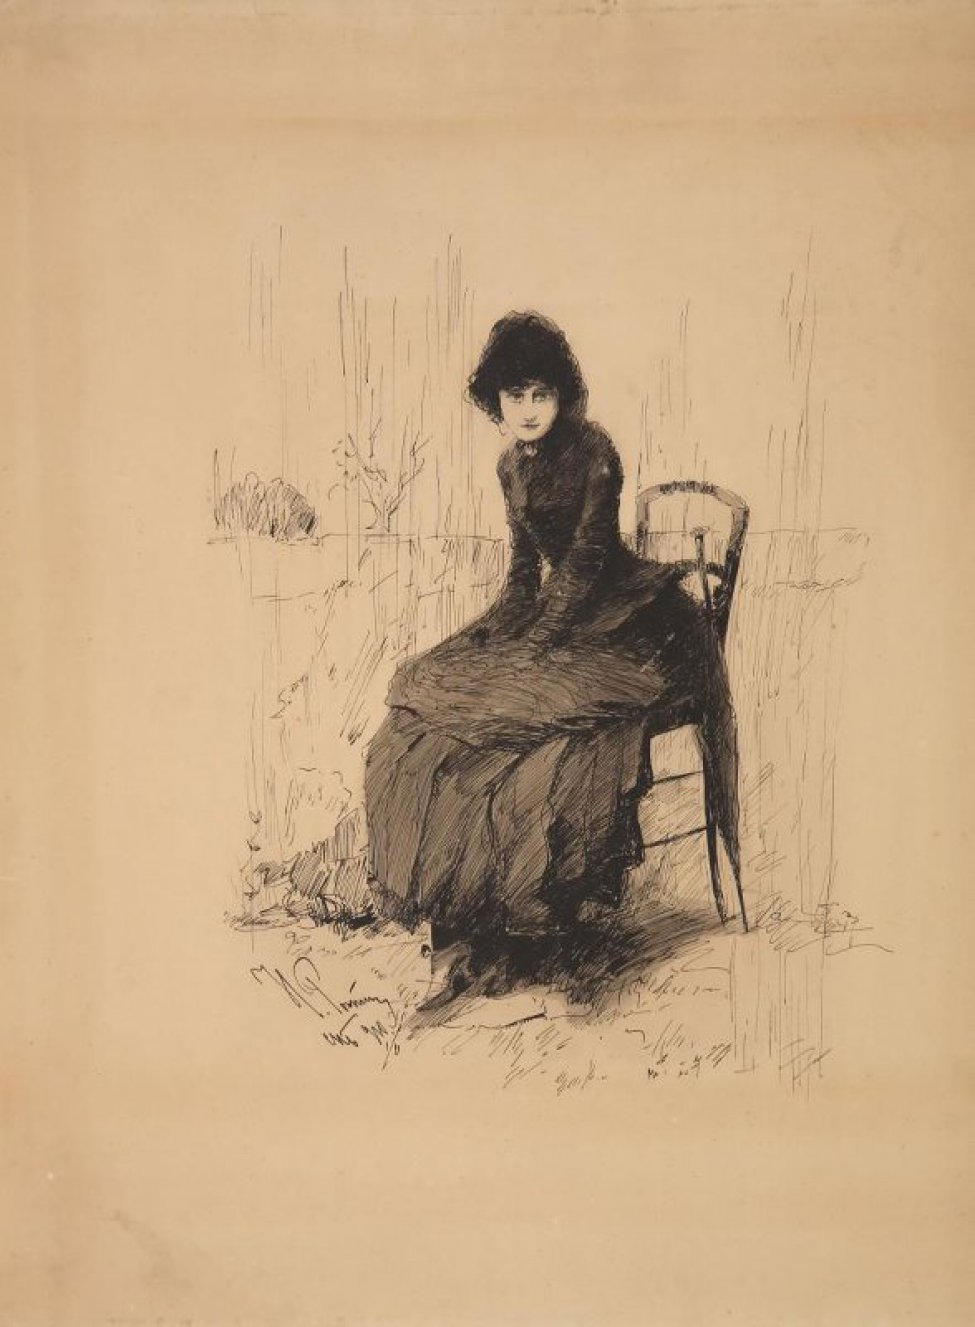 Изображена женщина в черном платье, сидящая на стуле; руки лежат на коленях. Около стула справа стоит закрытый зонтик.